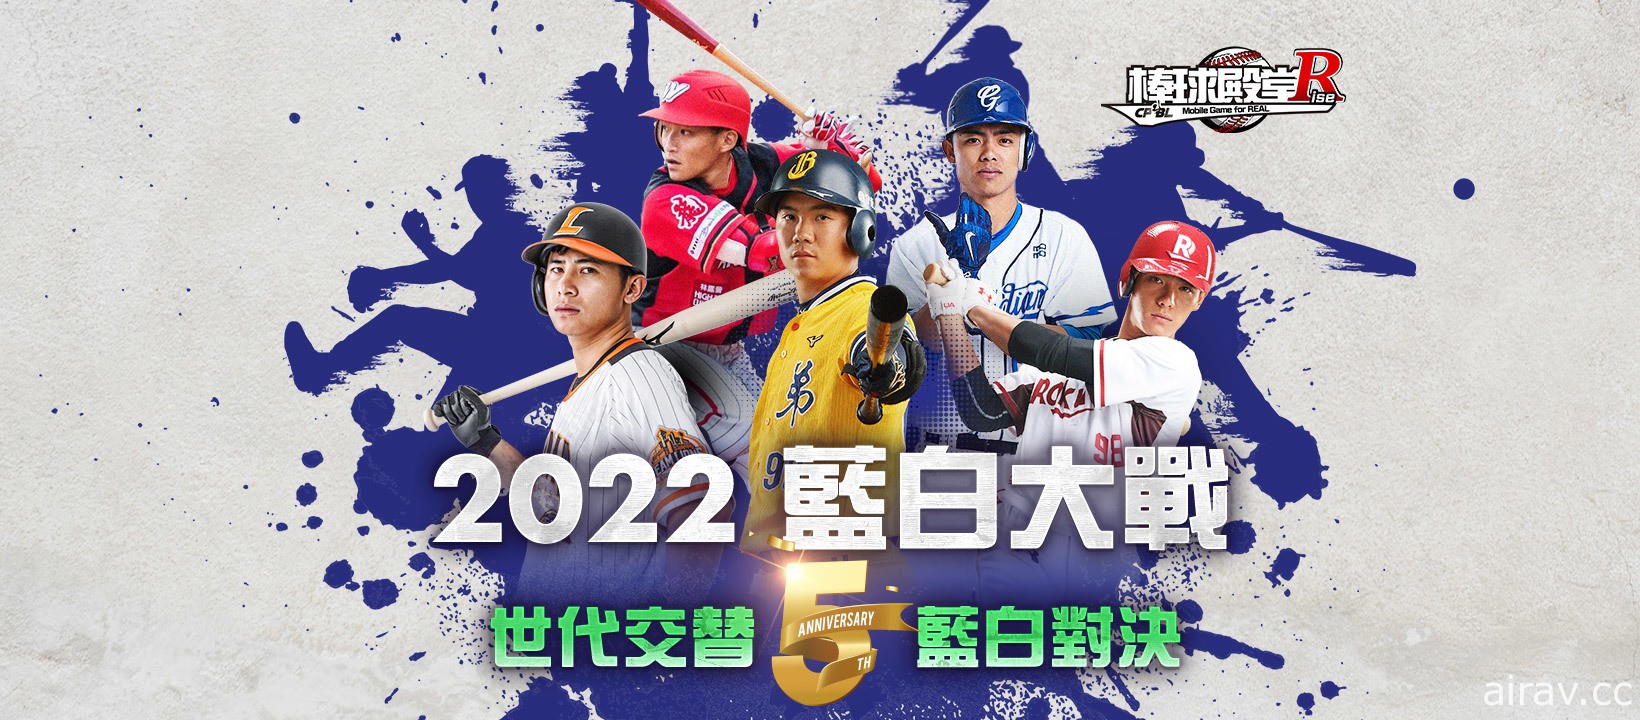 《棒球殿堂 Rise》歡慶 5 週年 限時推出「2022 藍白大戰」